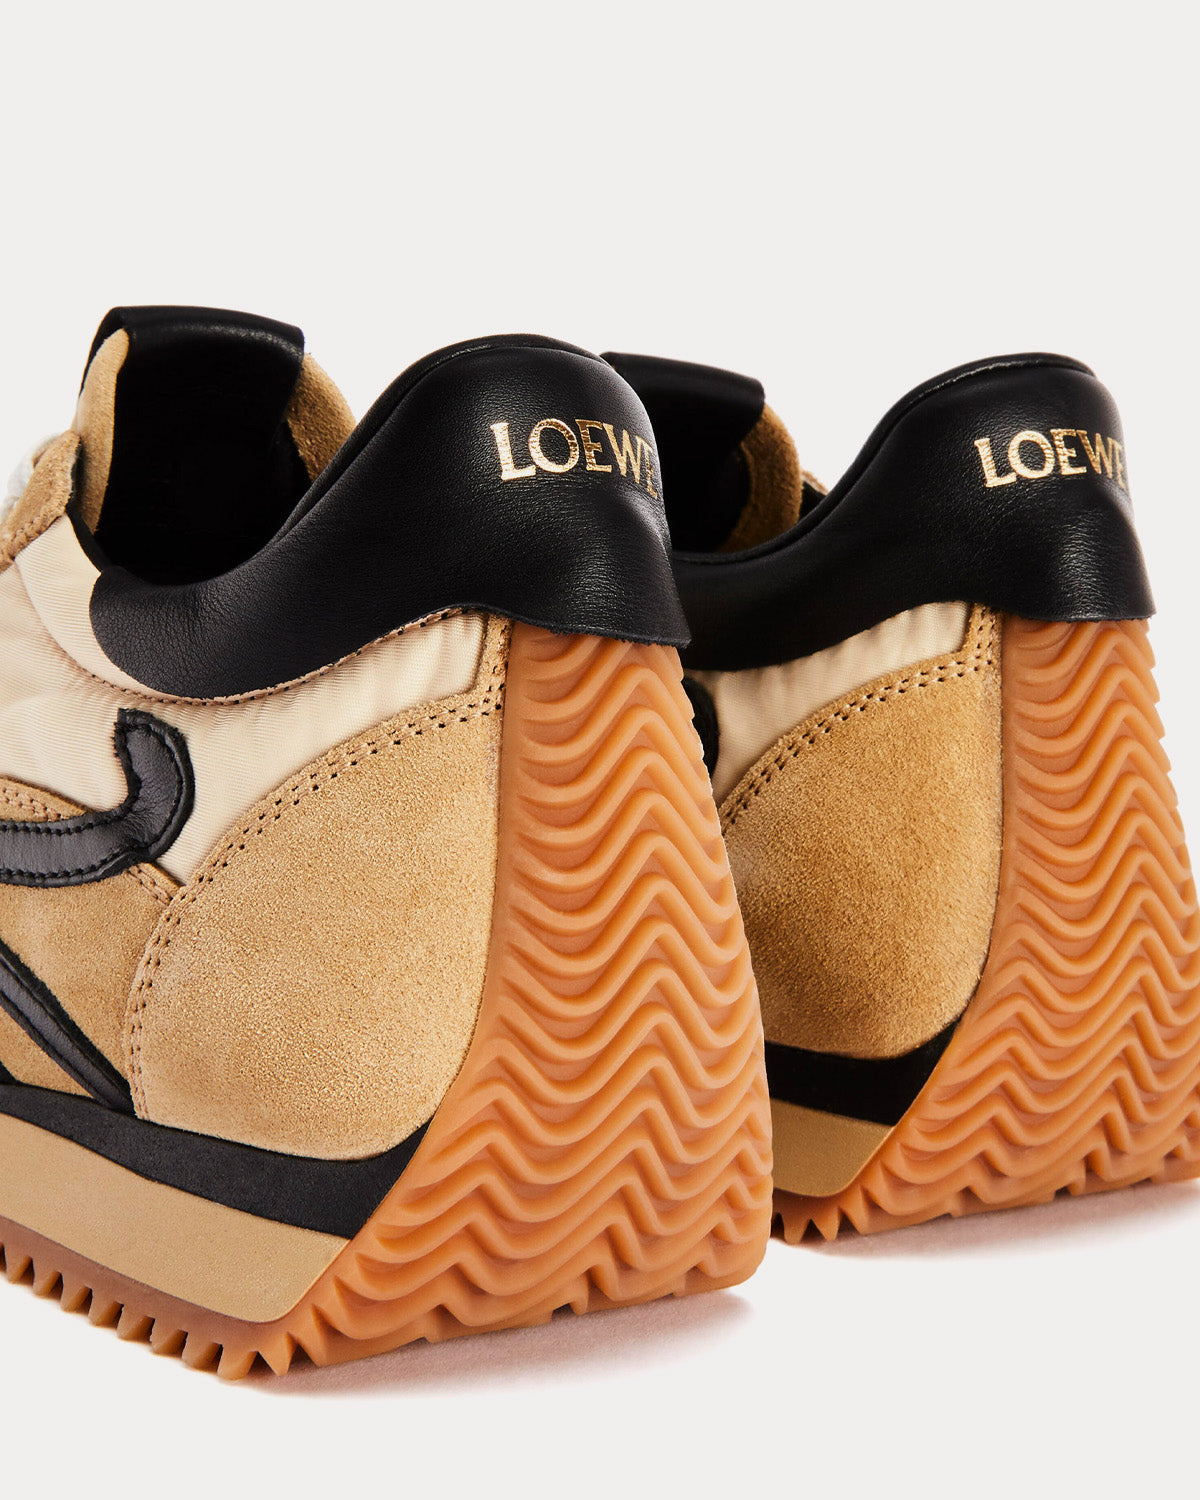 Loewe - Flow Runner in Suede & Nylon Gold / Black Low Top Sneakers